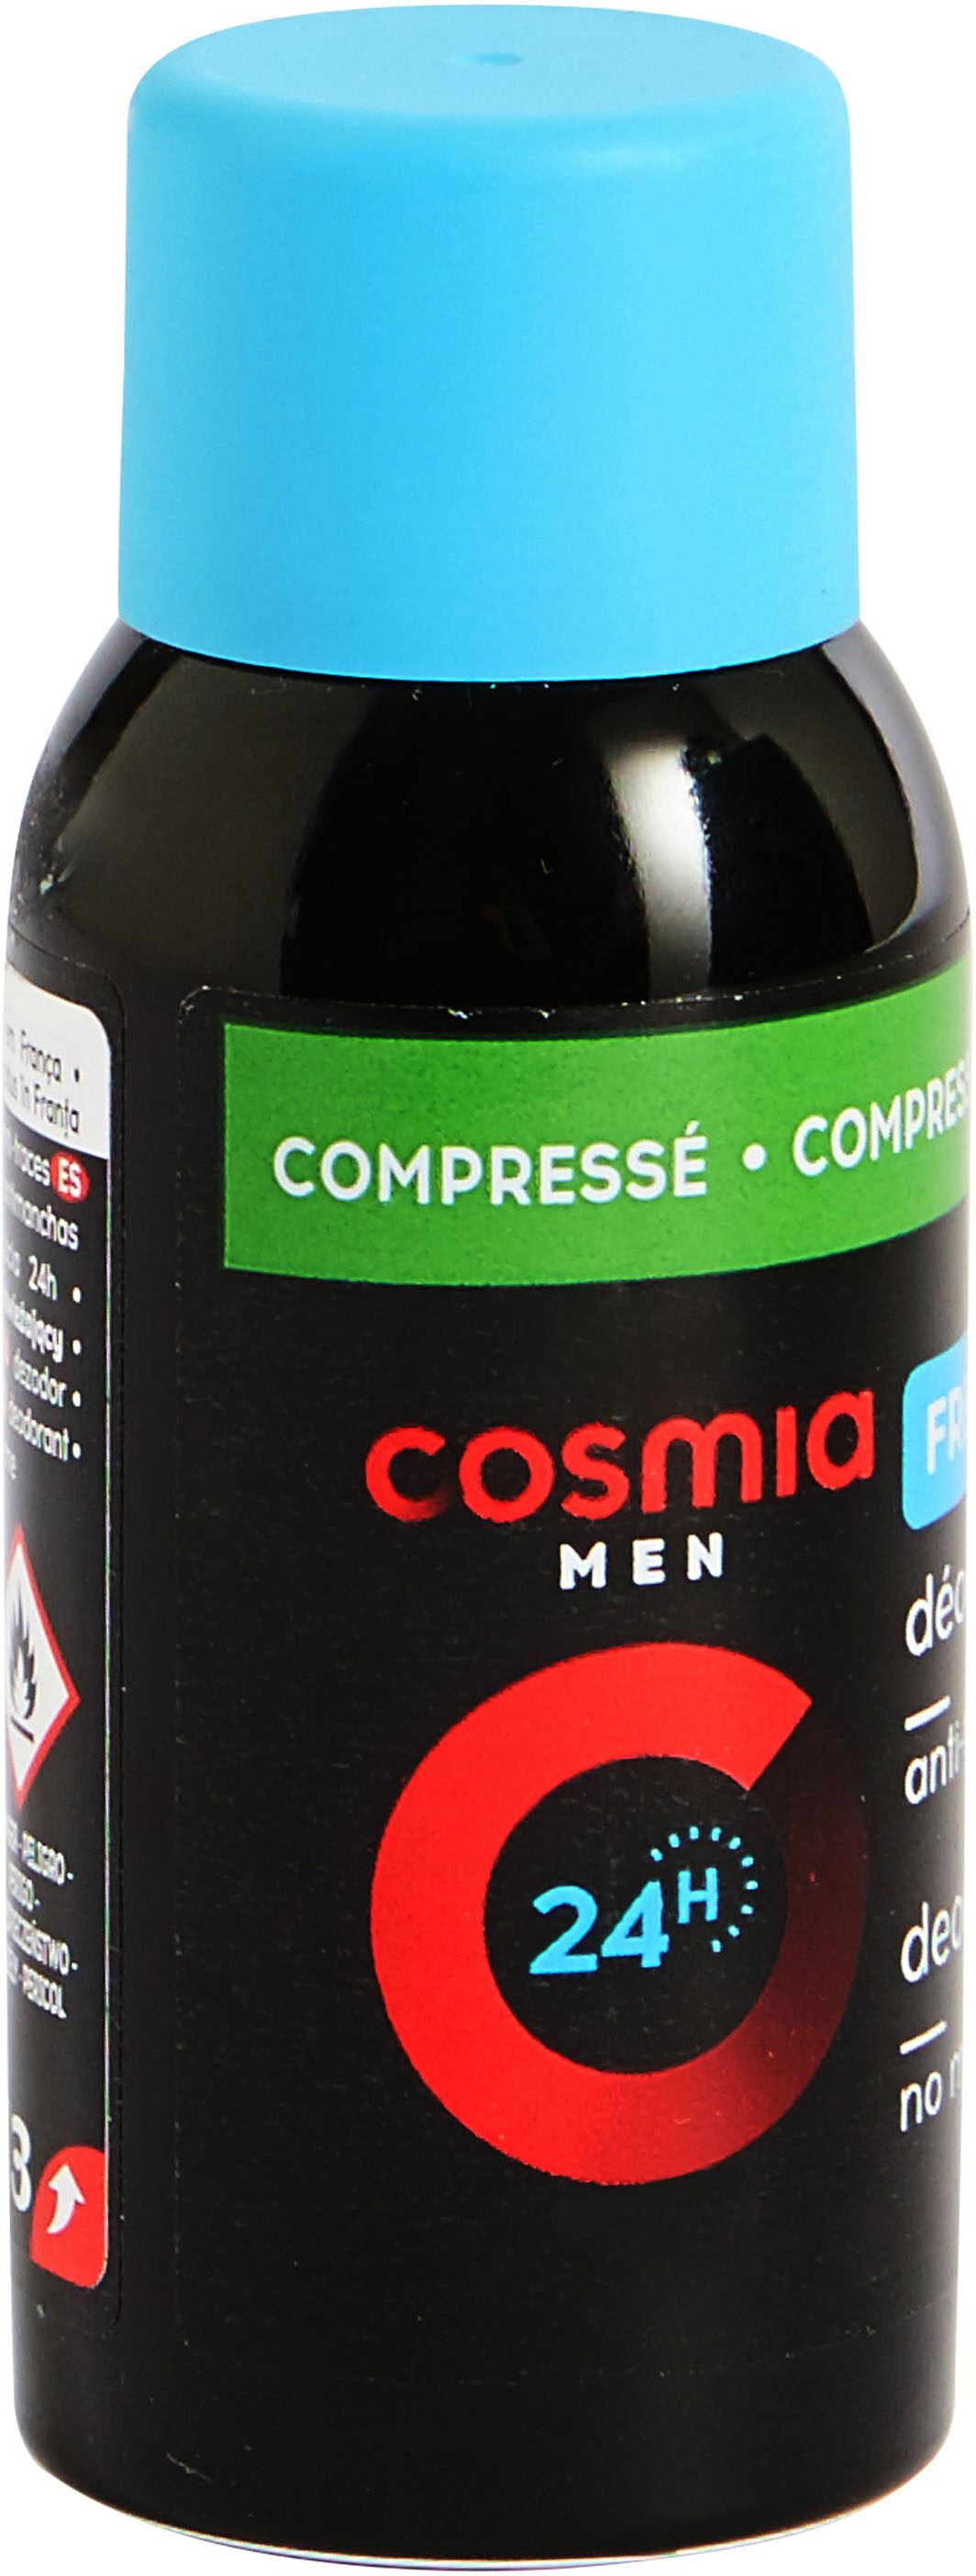 Cosmia deodorant homme atomiseur corps fraicheur 75 ml - 製品 - fr